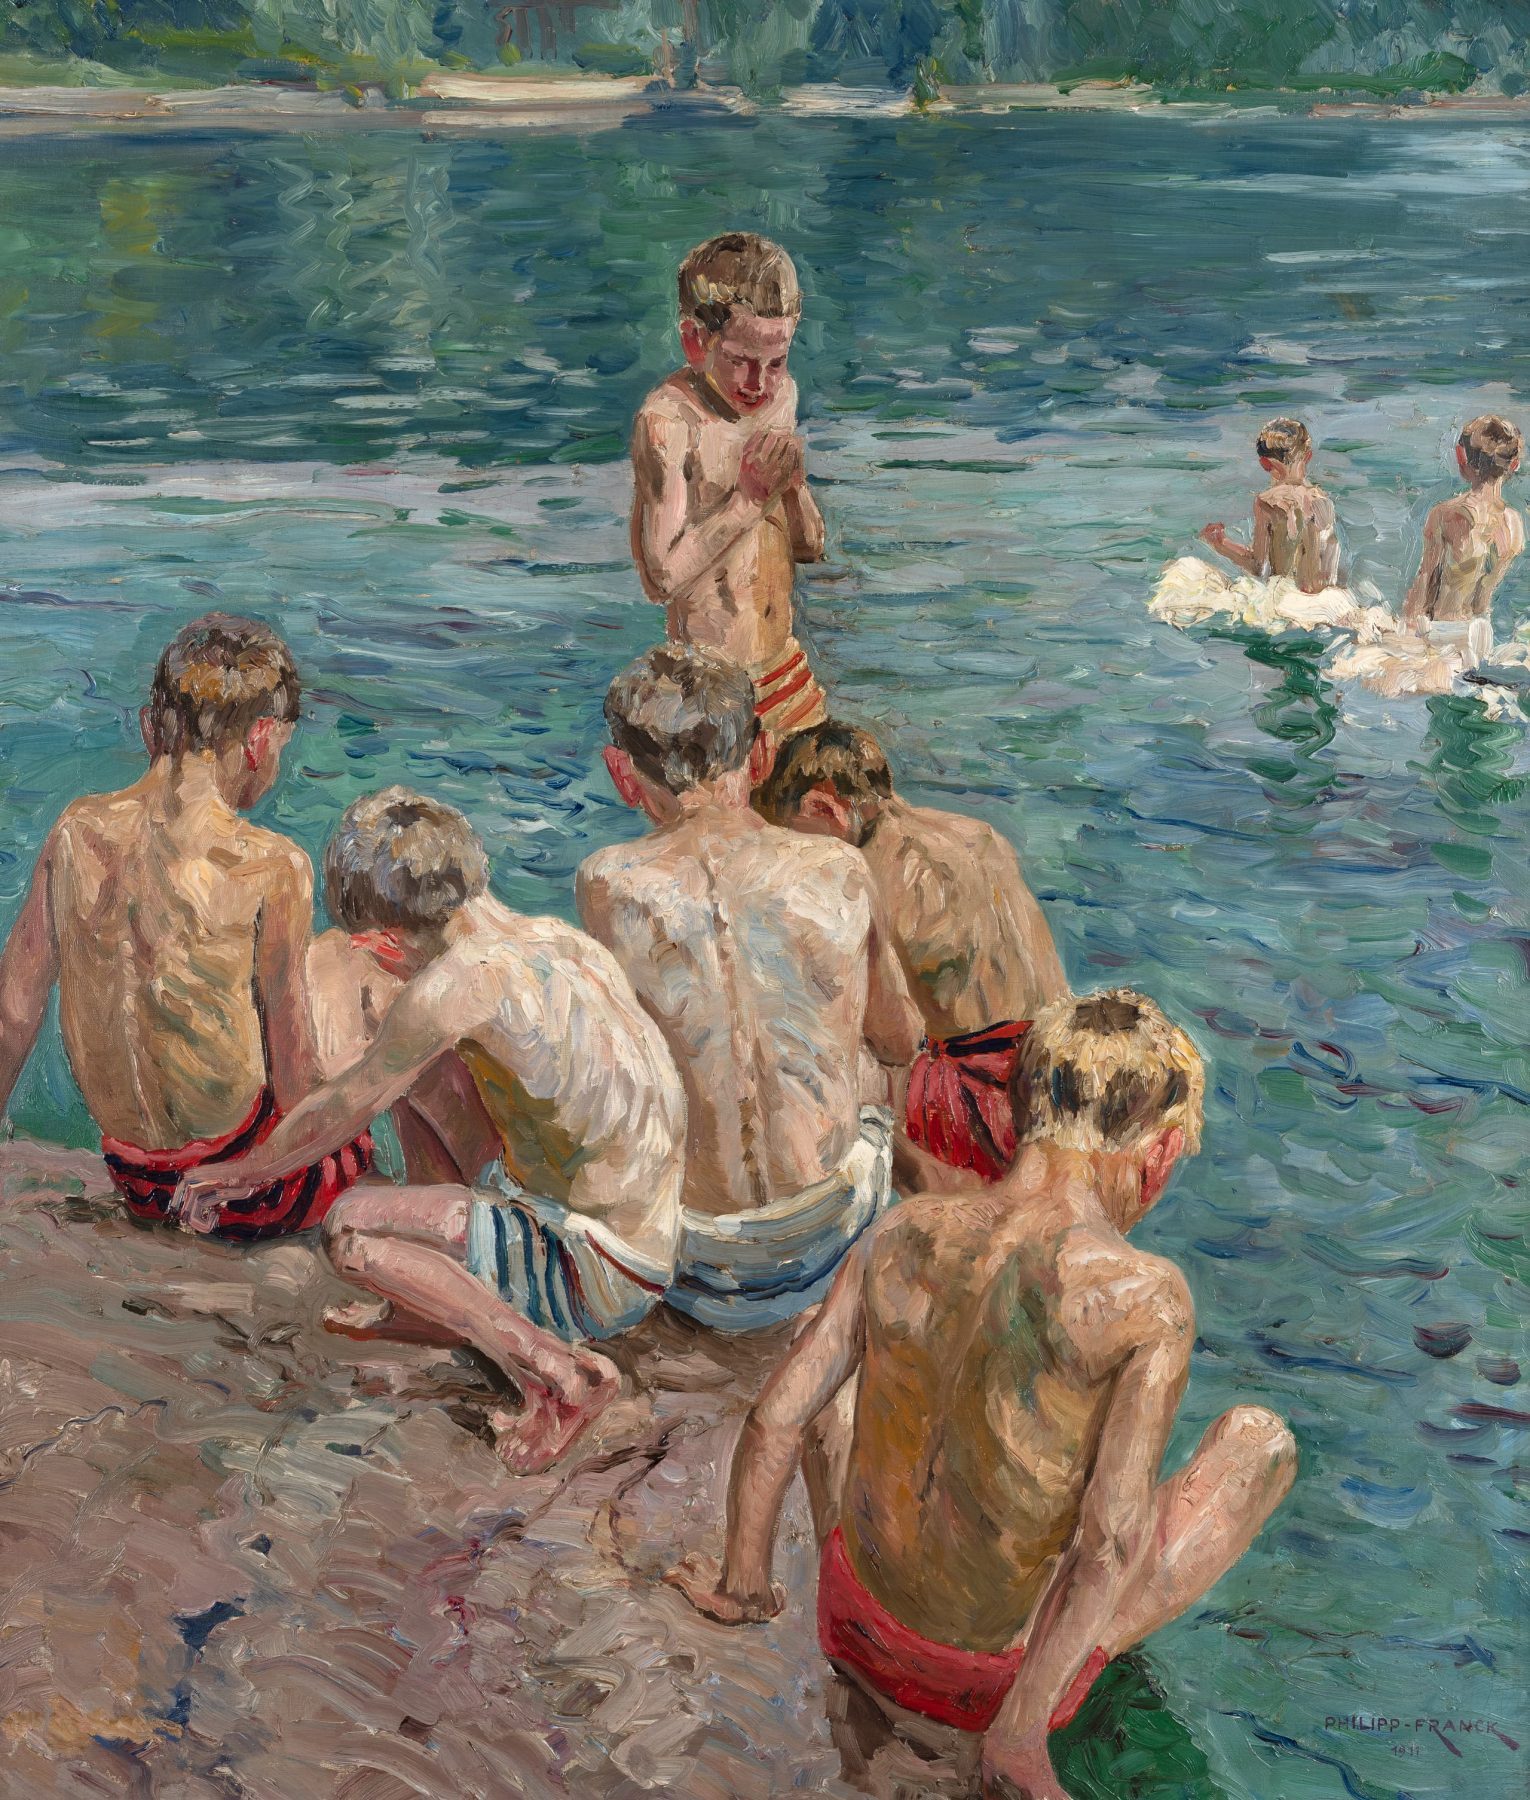 Einige badende Jungen am Ufer eines blauen Sees.